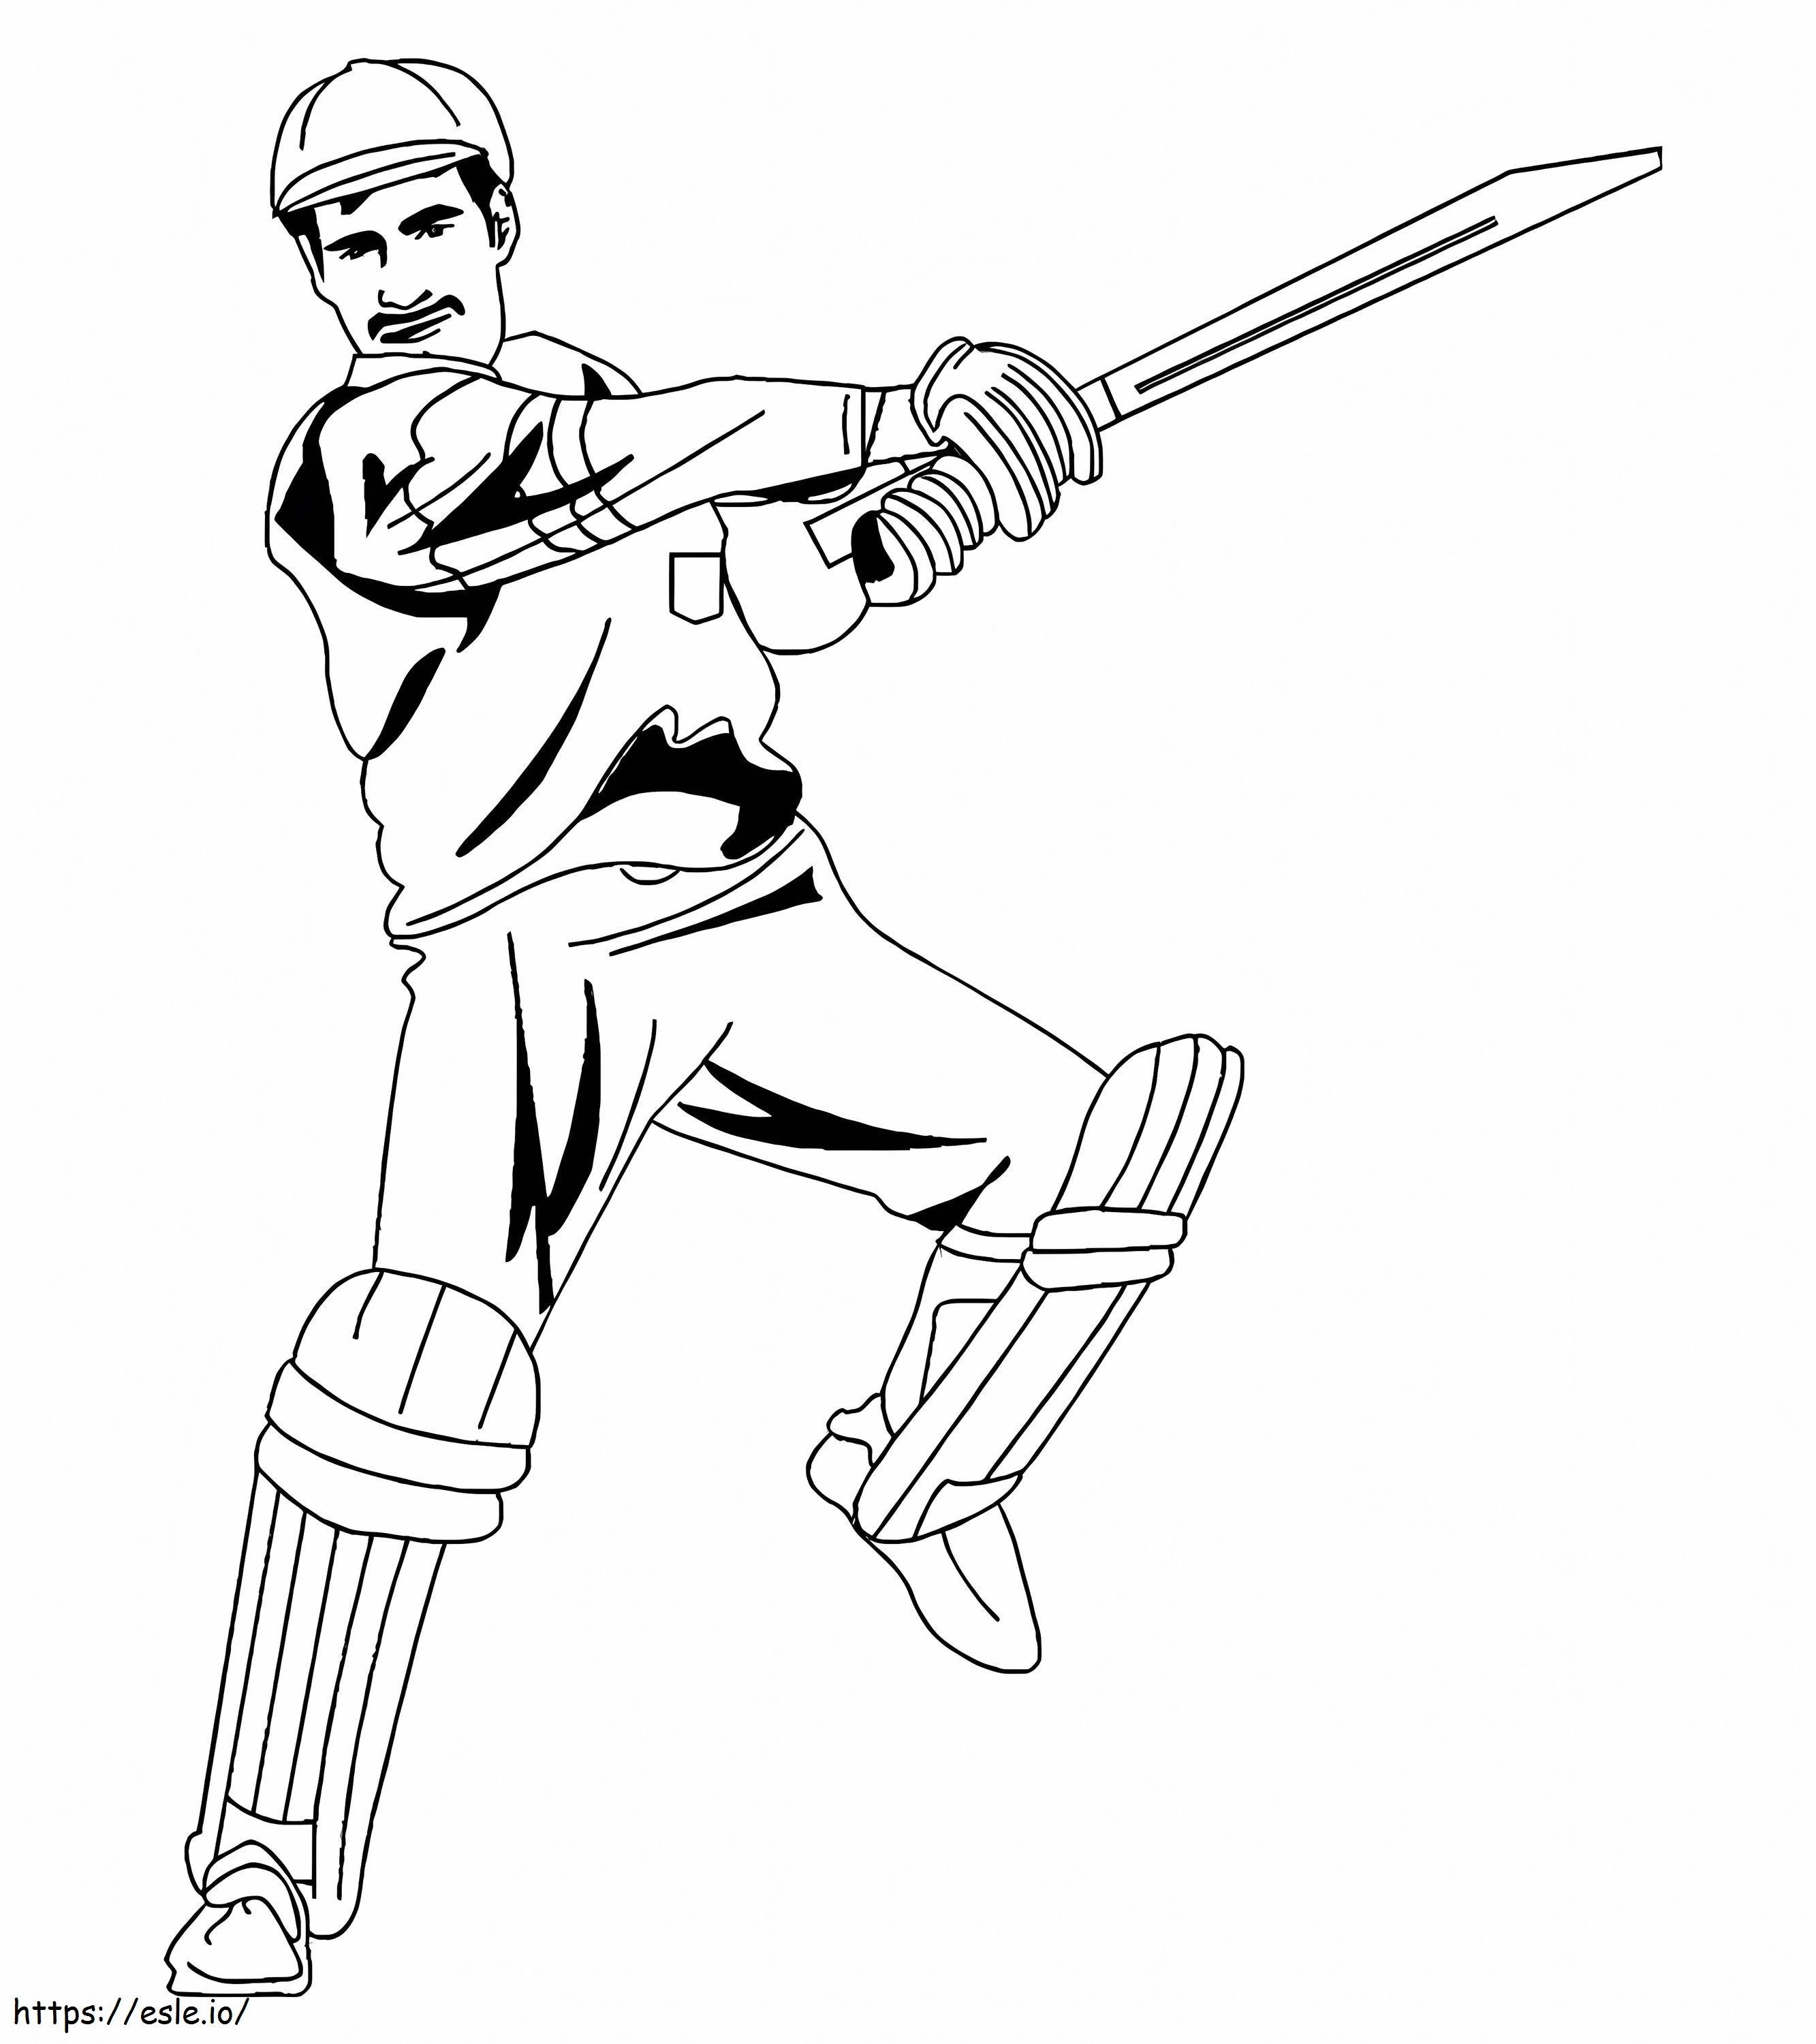 Mann spielt Cricket ausmalbilder